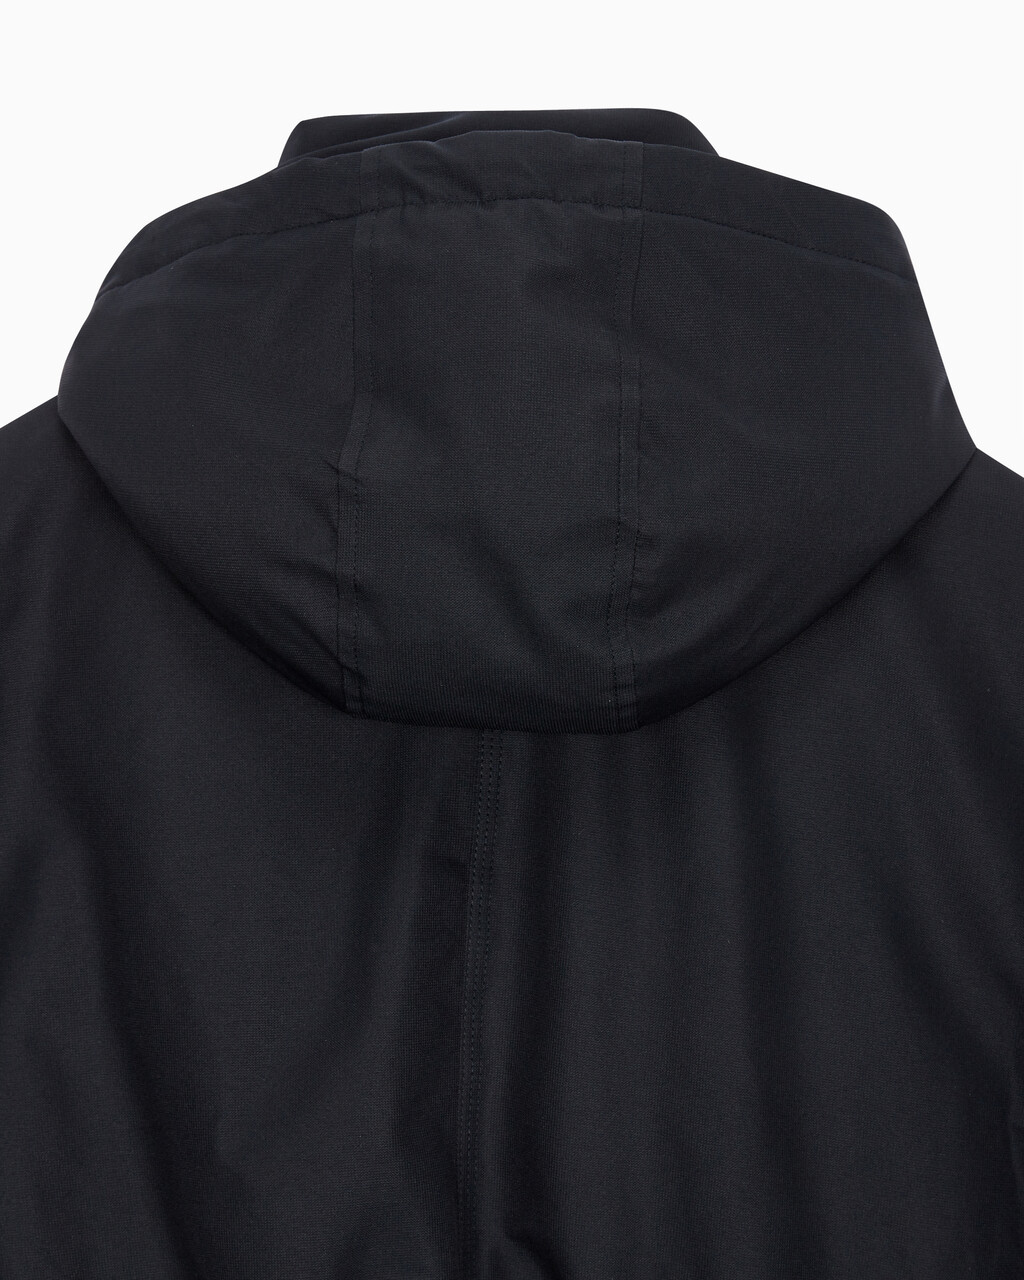 Buy 여성 크롭 패디드 재킷 in color BLACK